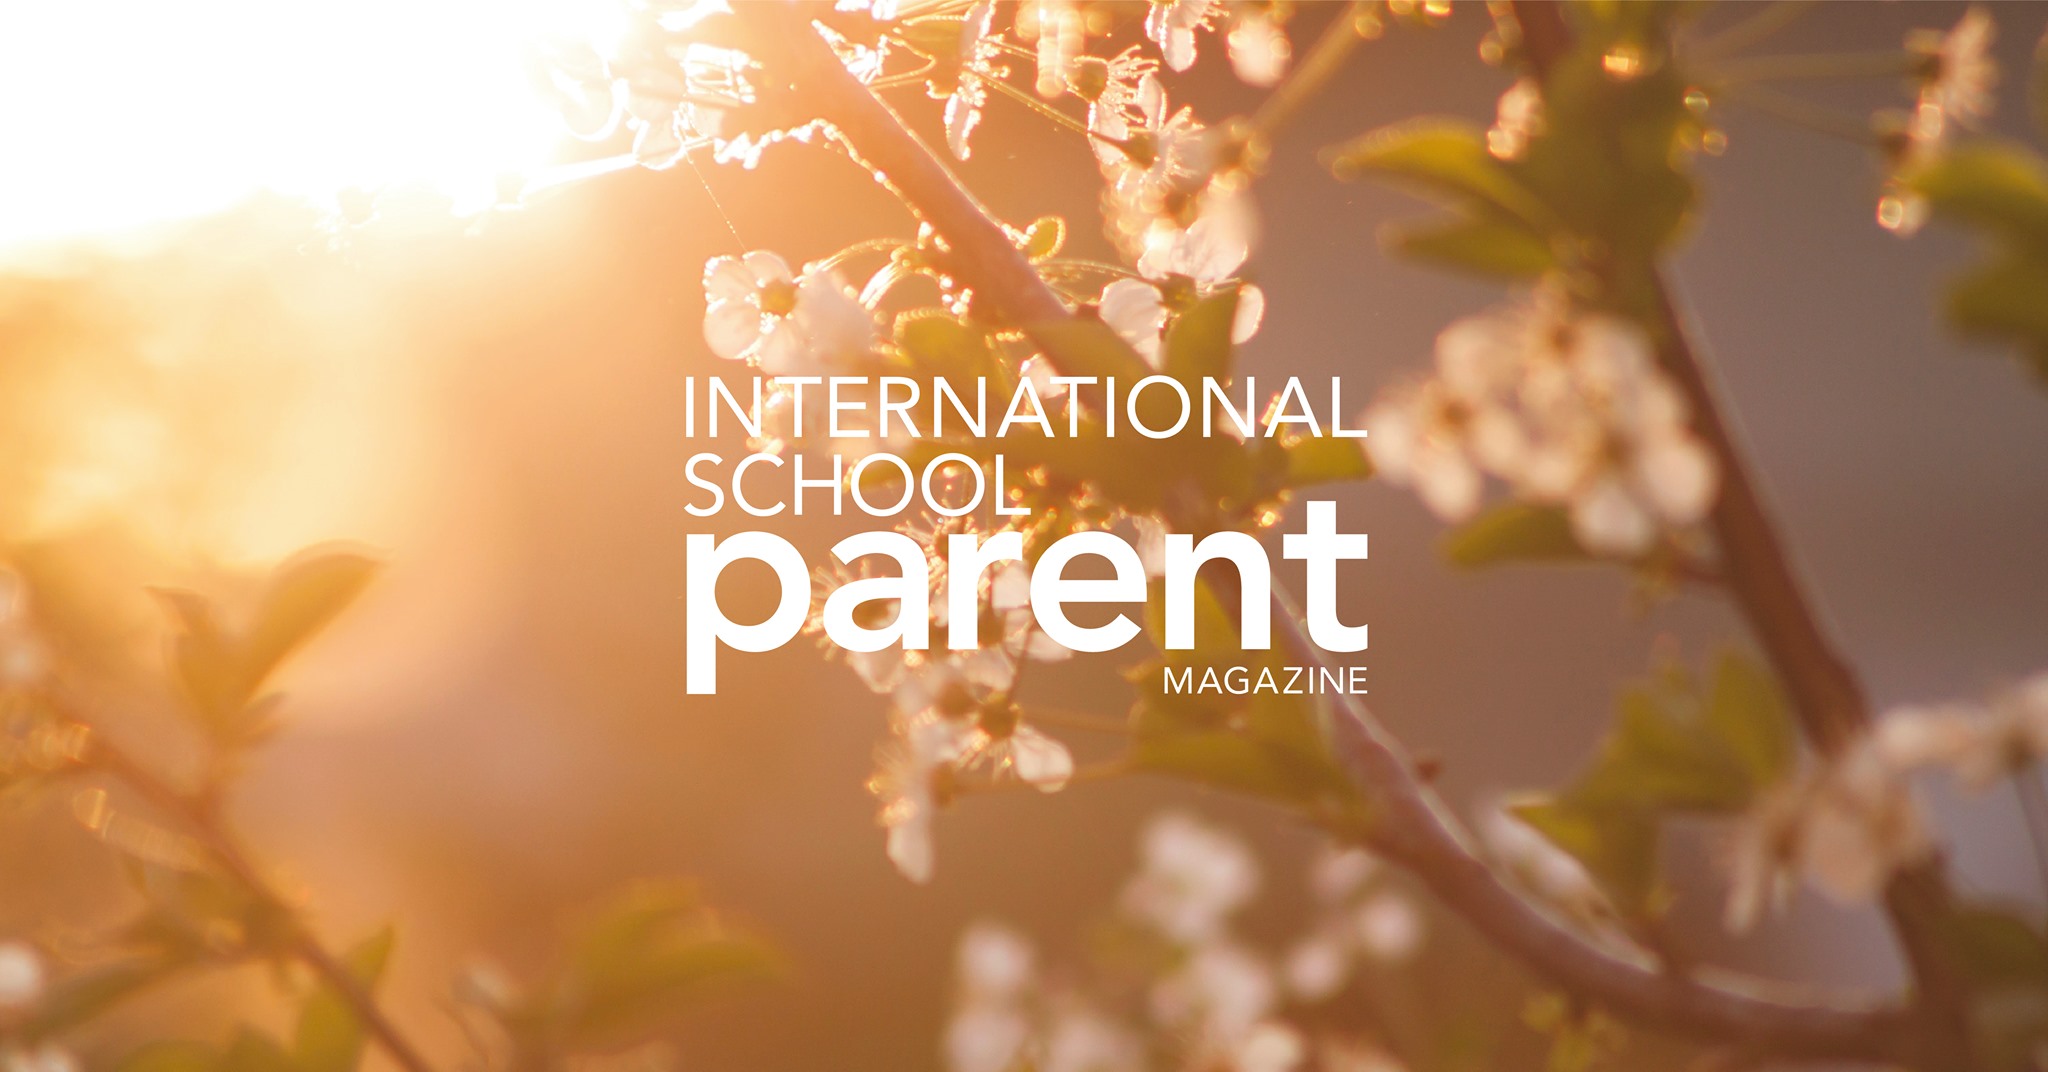 Международный школьный журнал для родителей